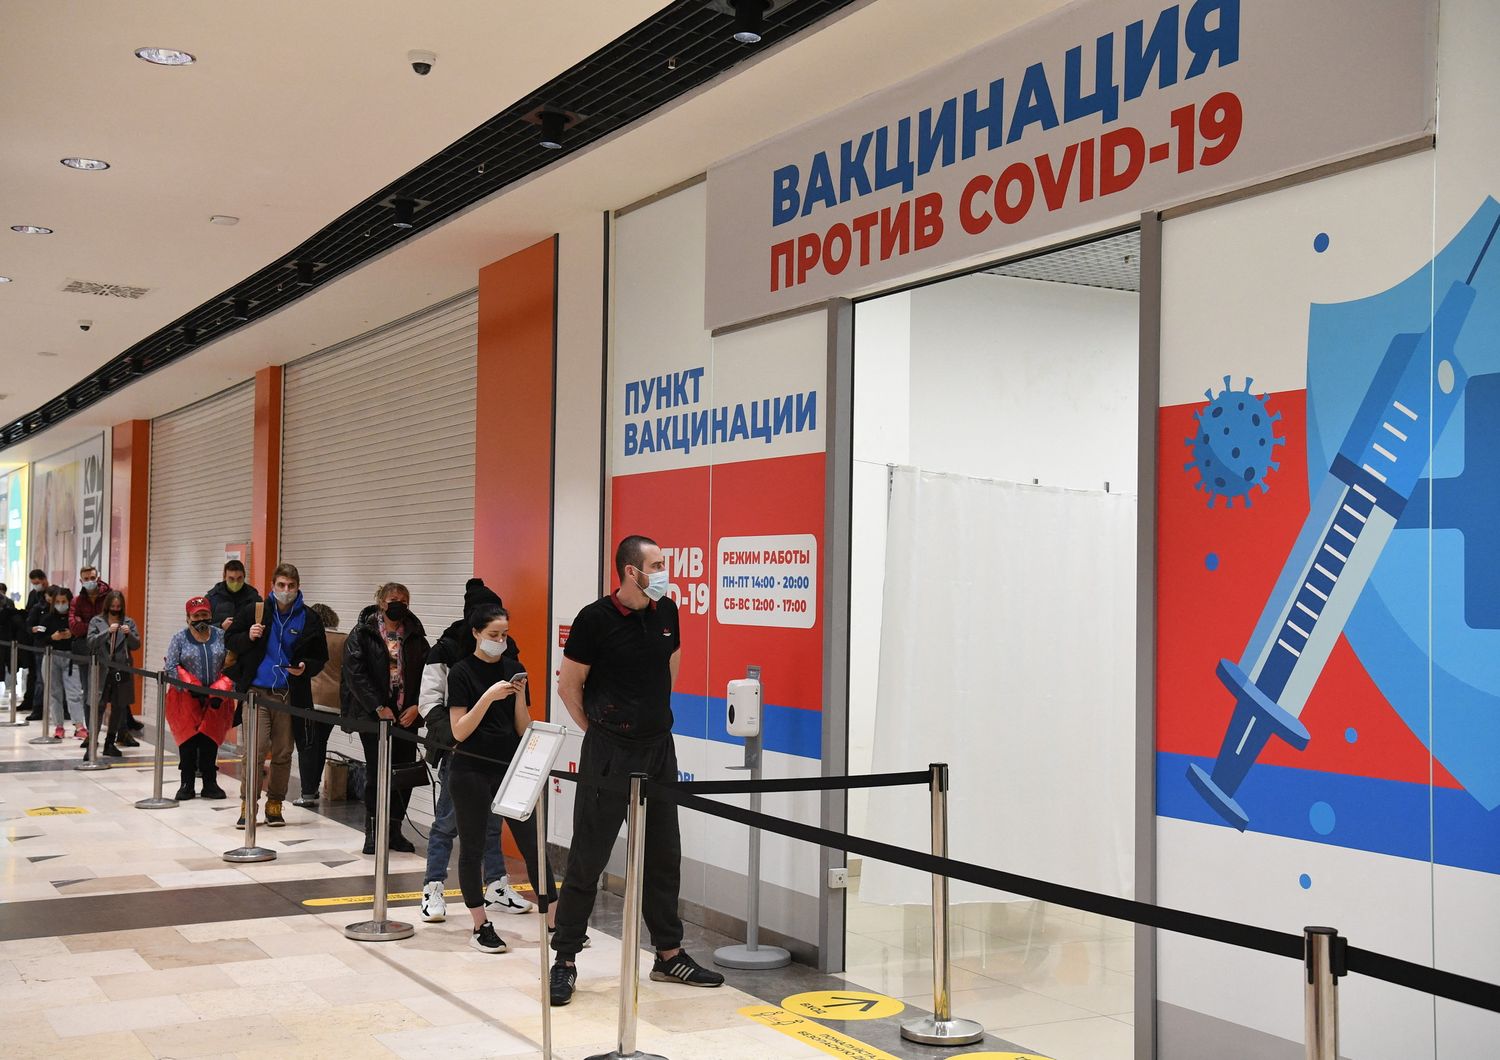 Vaccinazioni contro il Covid in un centro commerciale di Novosibirsk in Russia&nbsp;